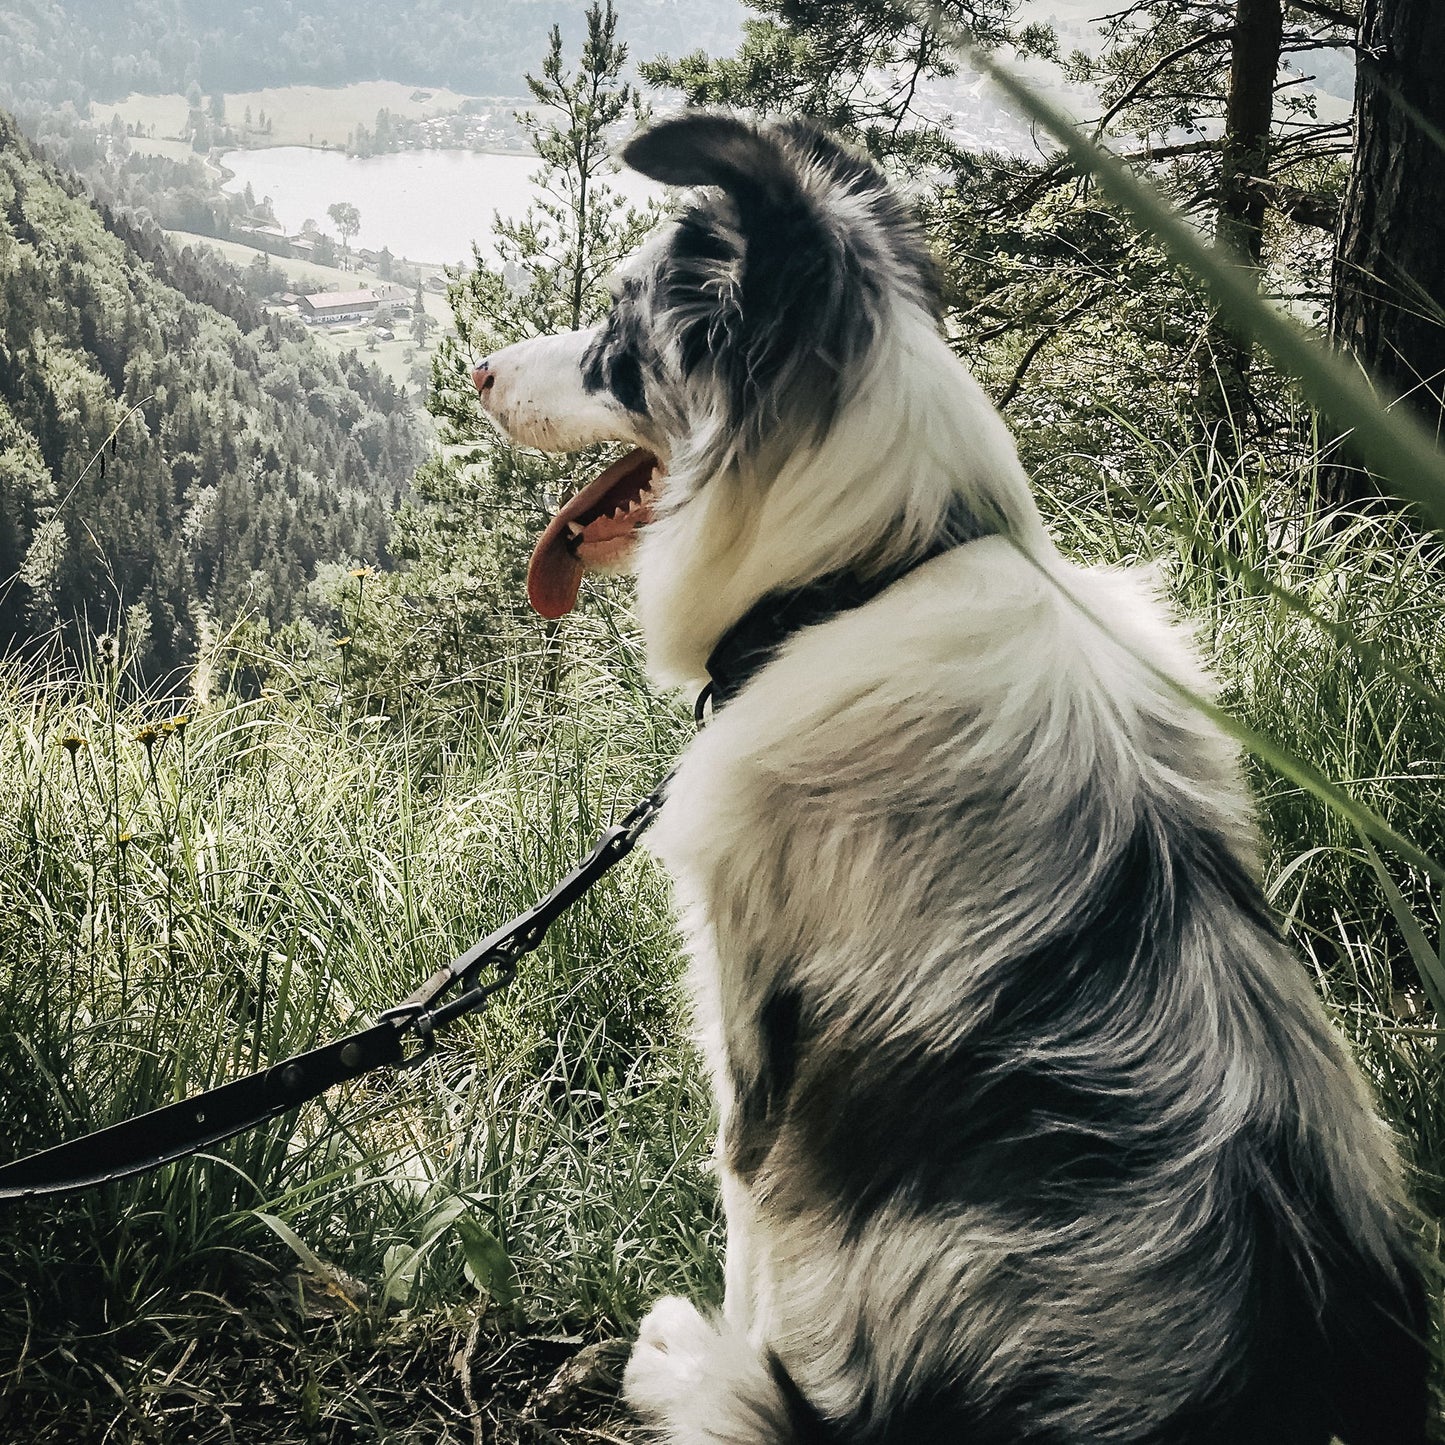 Größentabelle Leder und Biothane Hundehalsband für echte abenteuer-hunde & wasserratten ✔ 100% wasserfest ✔ langlebig & pflegeleicht ✔ hypoallergen hundehalsbänder